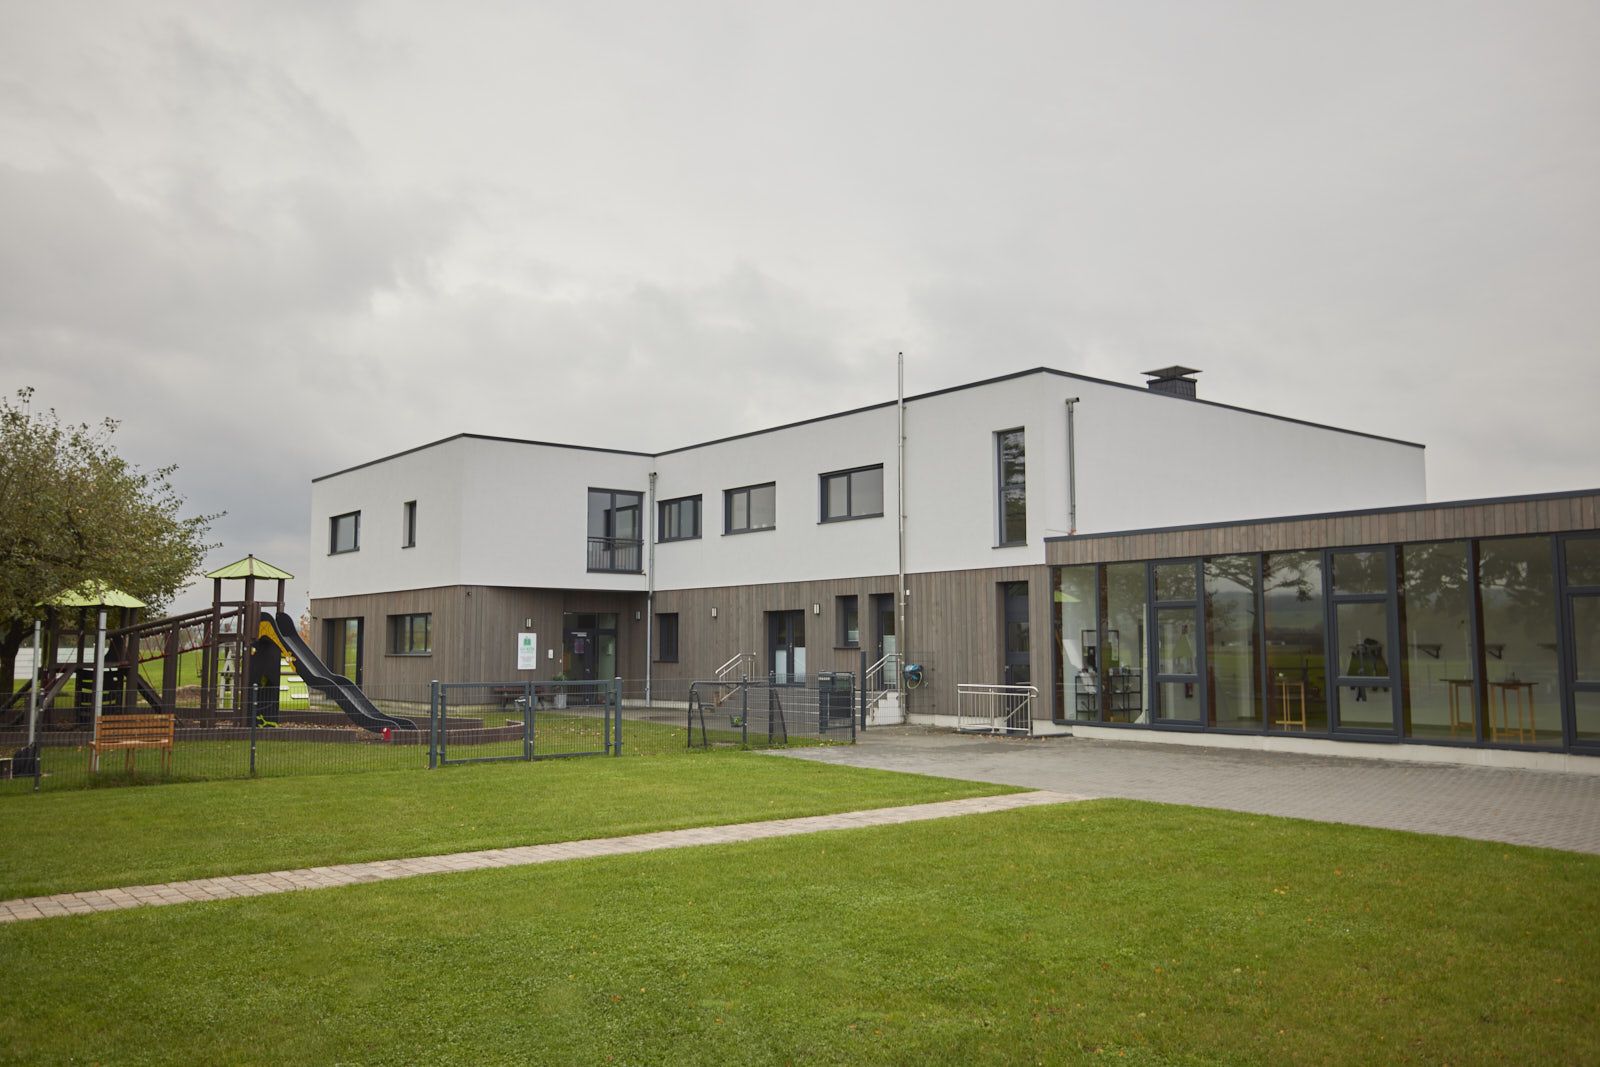 AHF Kindertagesstätte in Bad Lippspringe. Gebäude der KiTa mit Holz- und Putz-Fassade. EPU Architekten